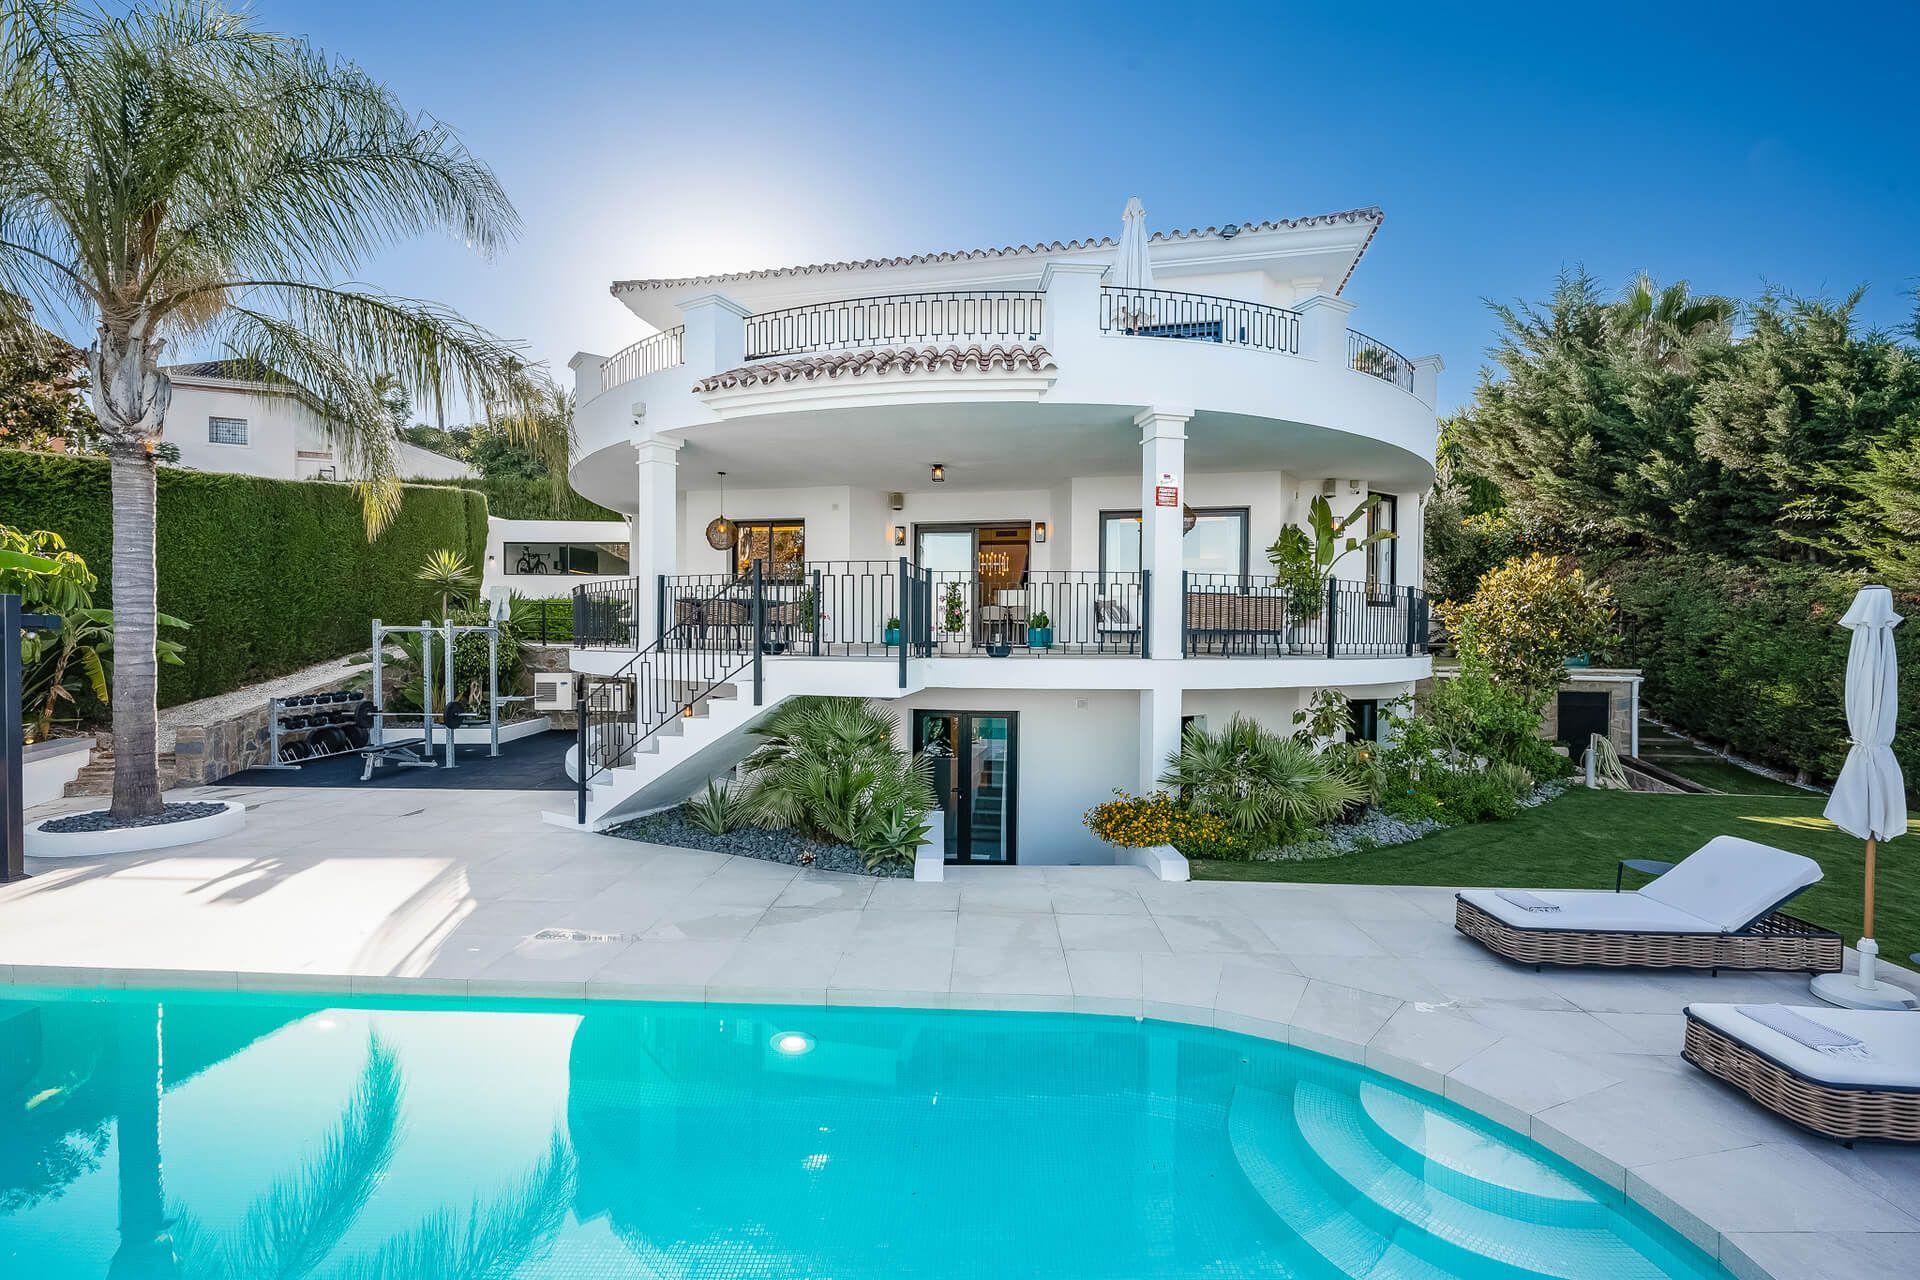 5 bedroom house / villa for sale in Benahavis, Costa del Sol